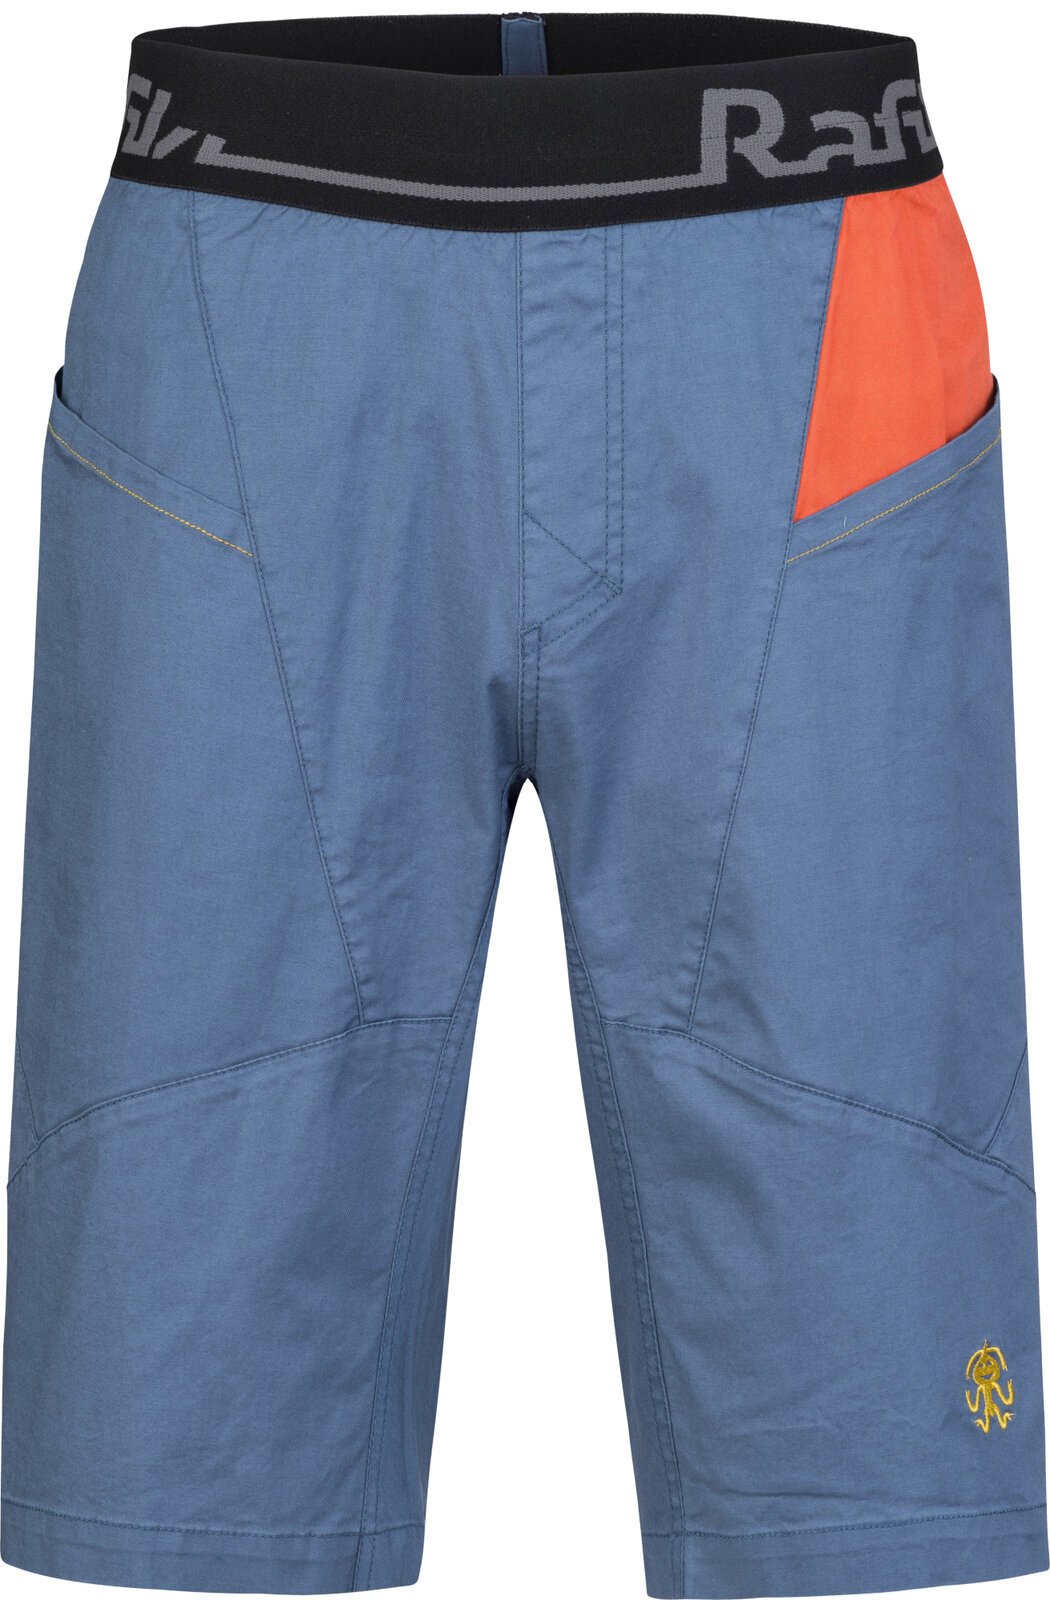 Outdoor Shorts Rafiki Megos Man Shorts Ensign Blue/Clay S Outdoor Shorts